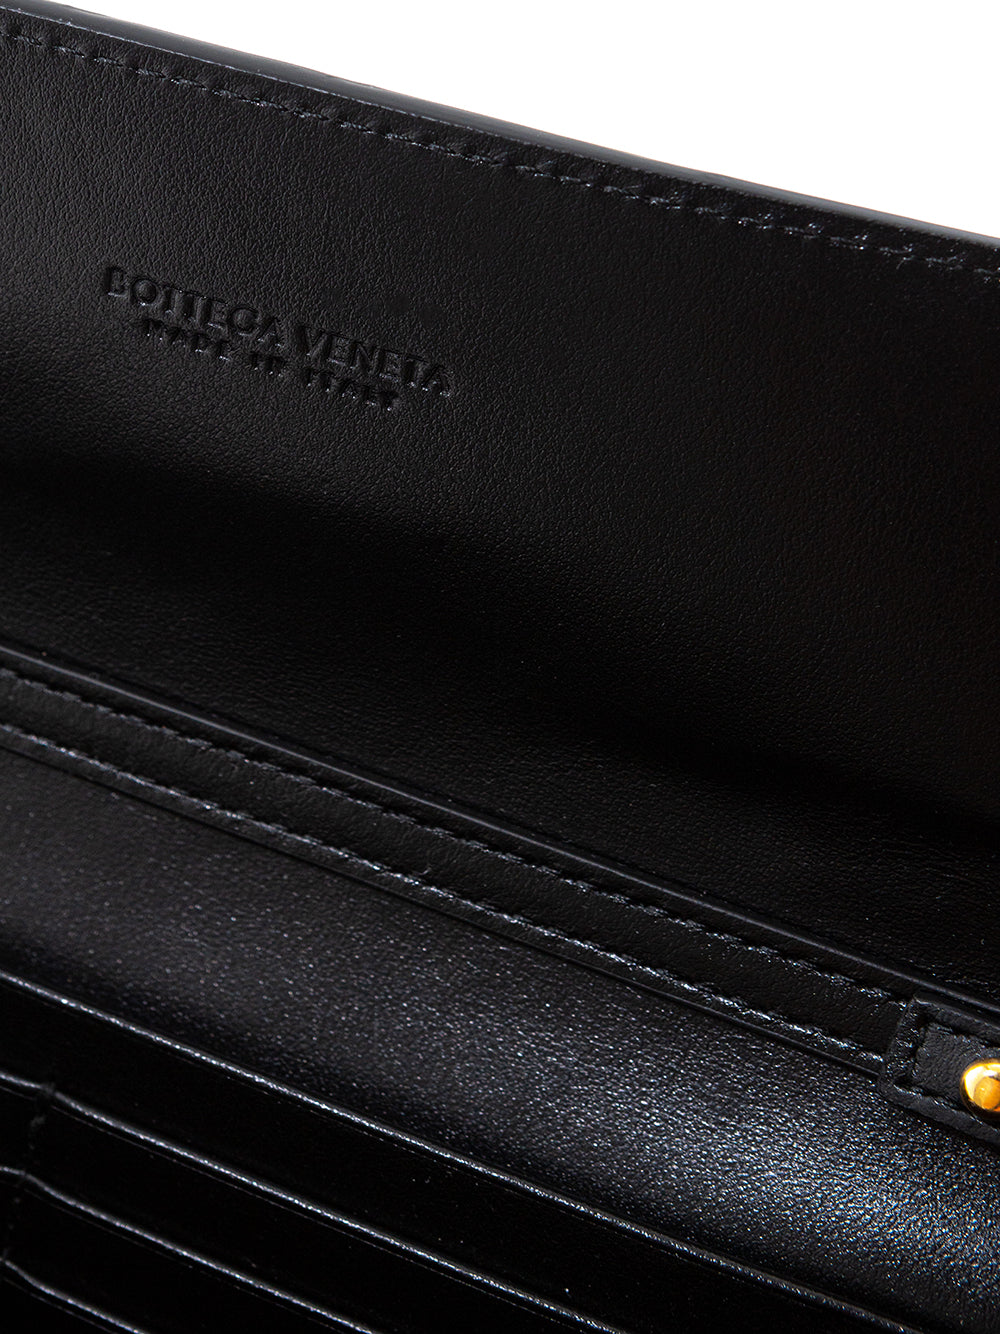 Bottega Veneta Mini Bag Wallet on Chain in Intreccio Leather - DEA STILOSA MILANO